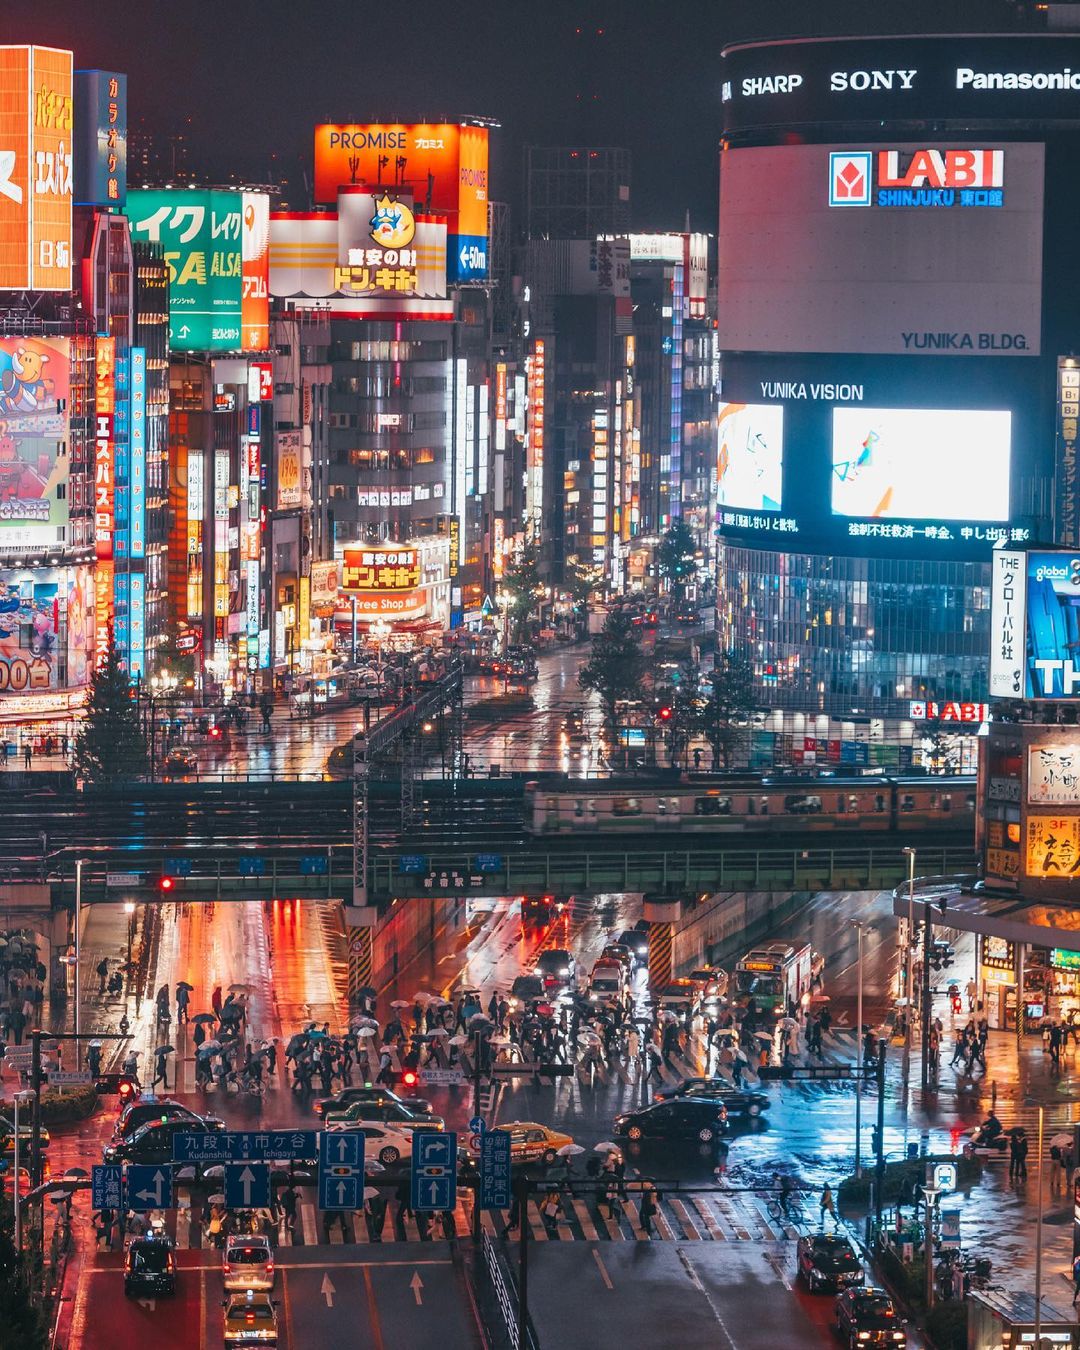 Магический и притягательный мир японских улиц и ландшафтов Юсуке, городской, фотографии, Читать, пейзажи, городские, поразительные, запечатлеть, чтобы, Японии, улицы, яркие, исследует, основном, уличной, Кубота, фокусируется, Япония, Токио, проживающий